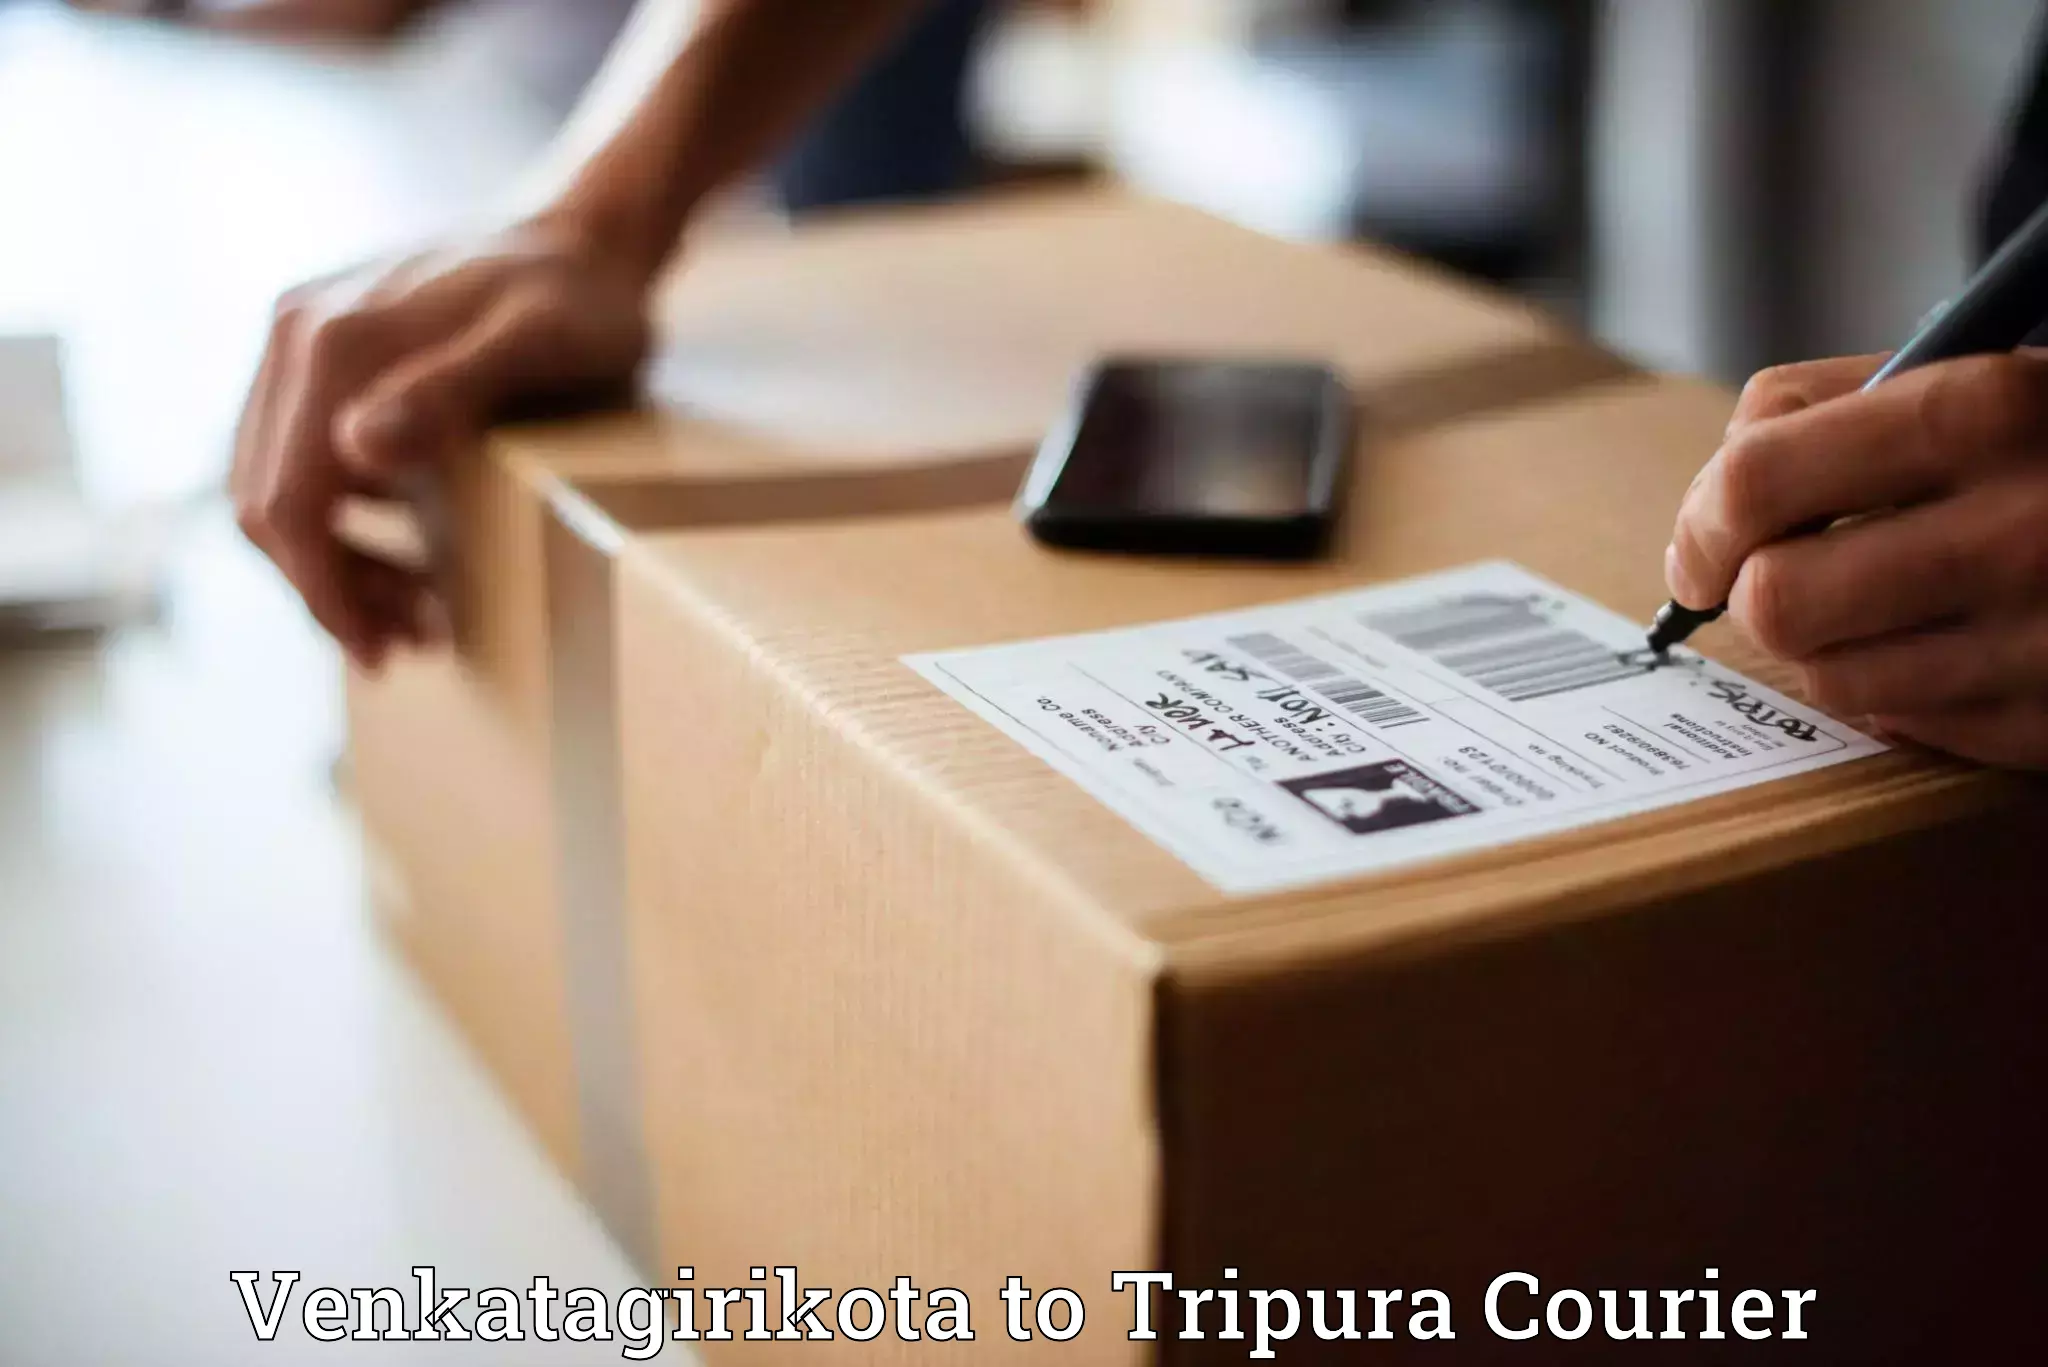 Optimized shipping routes Venkatagirikota to North Tripura